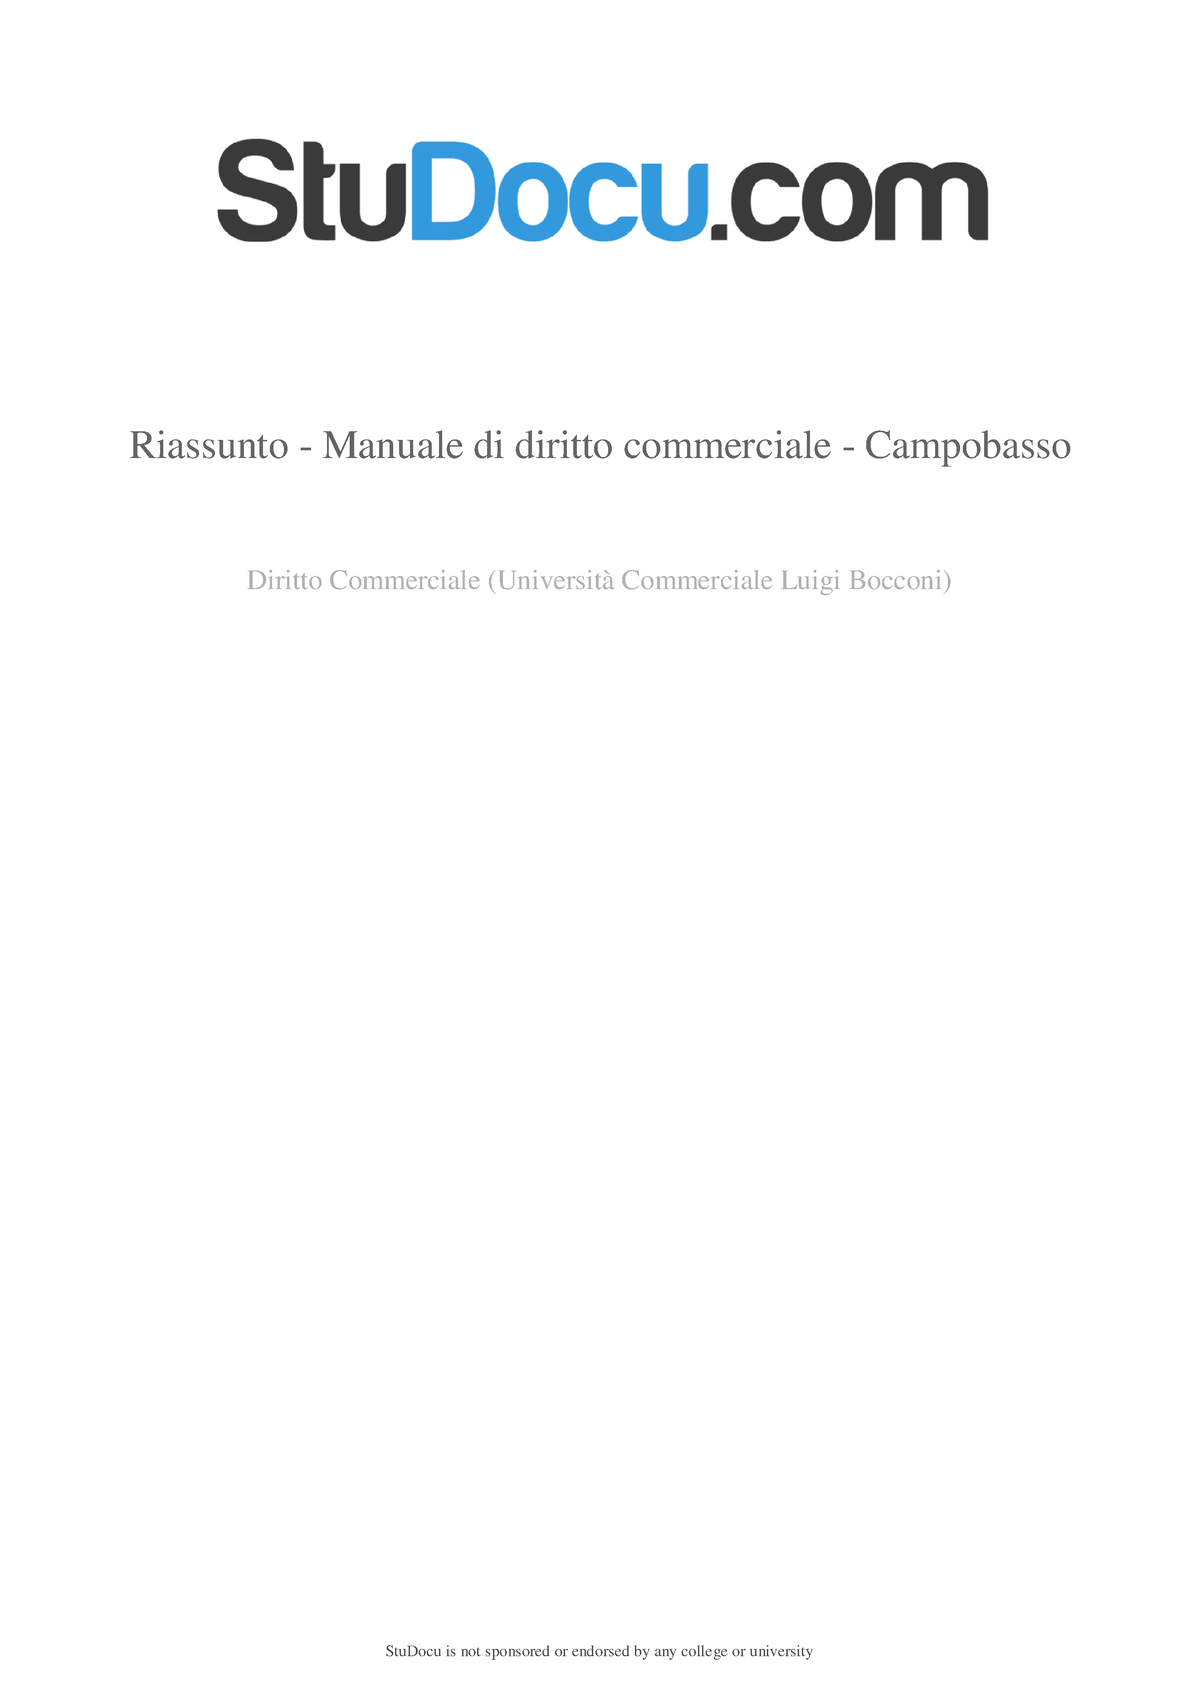 Riassunto DEL Manuale DI Diritto Commerciale PDF - sesta edizione campobasso  - - Studocu